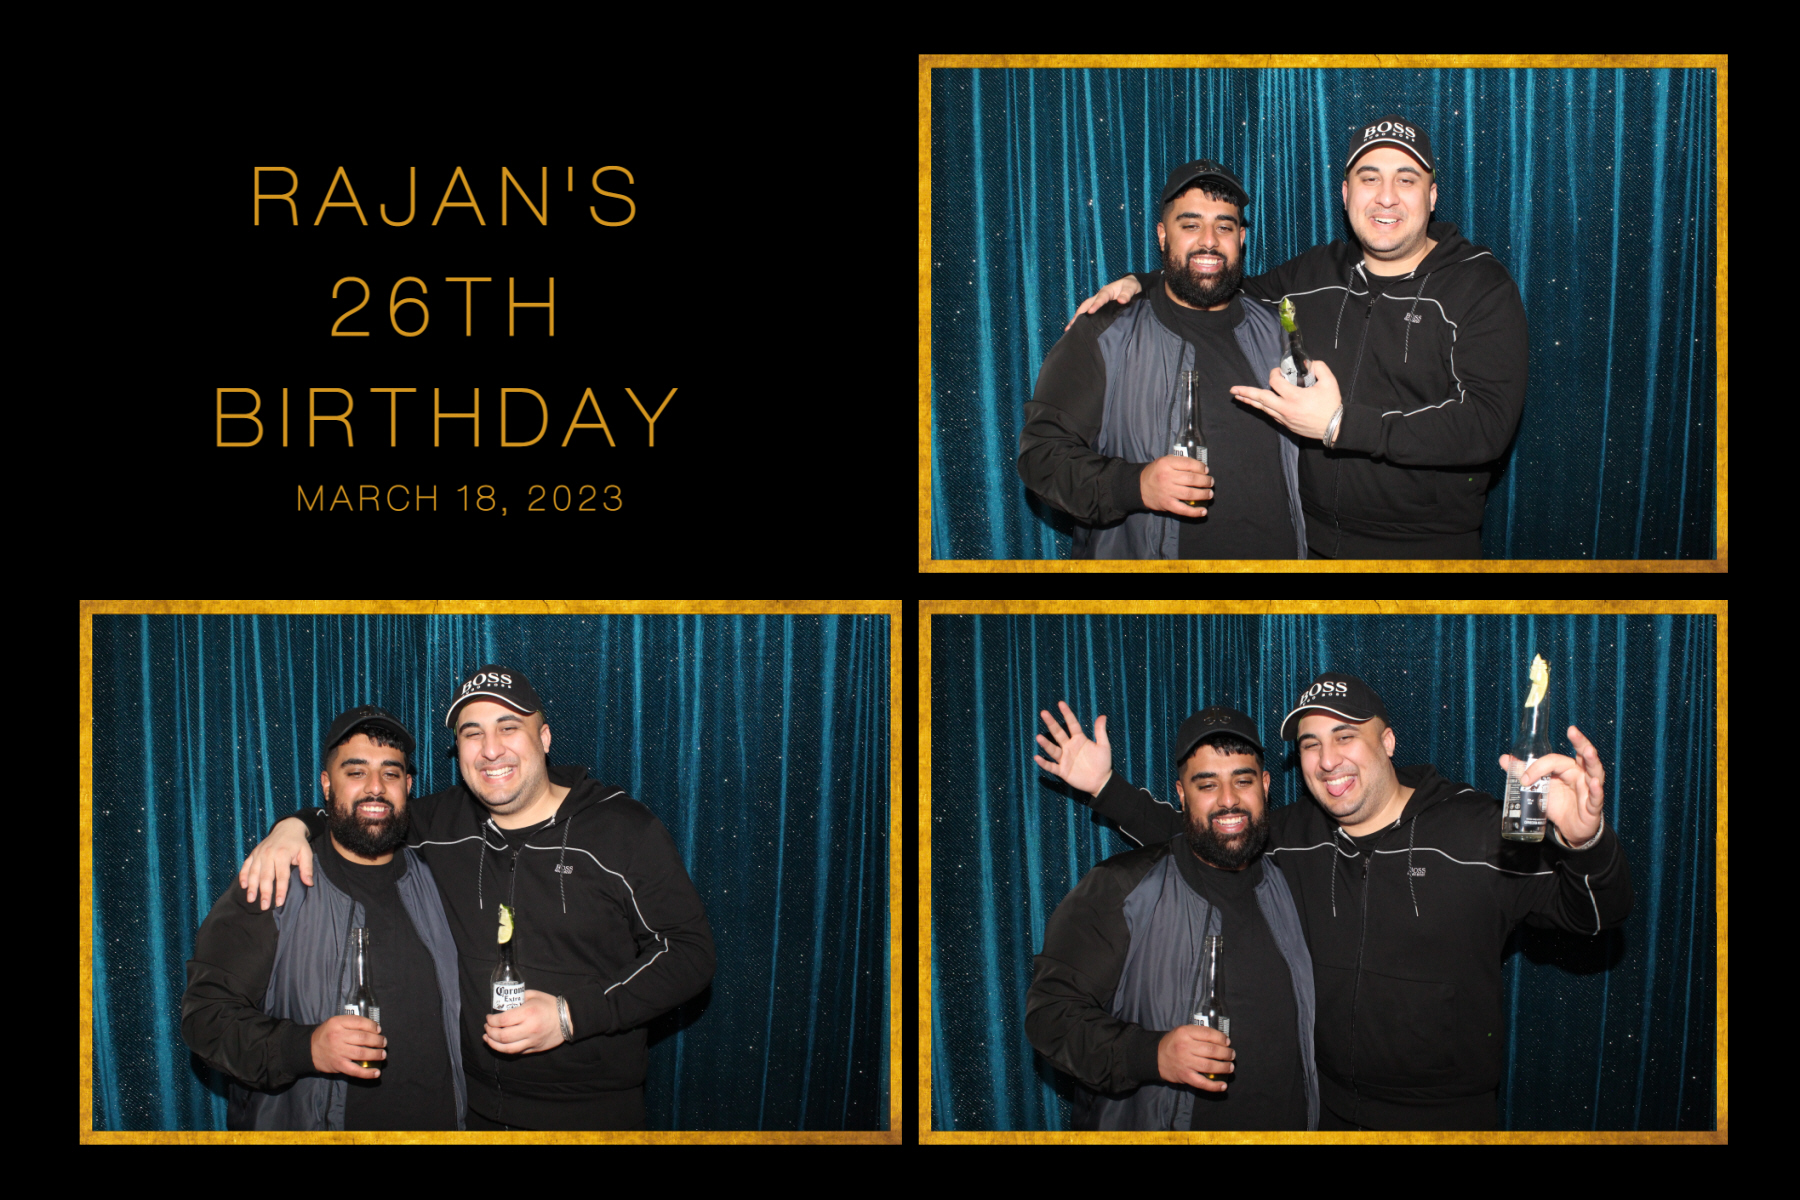 Rajan_s Birthday_29